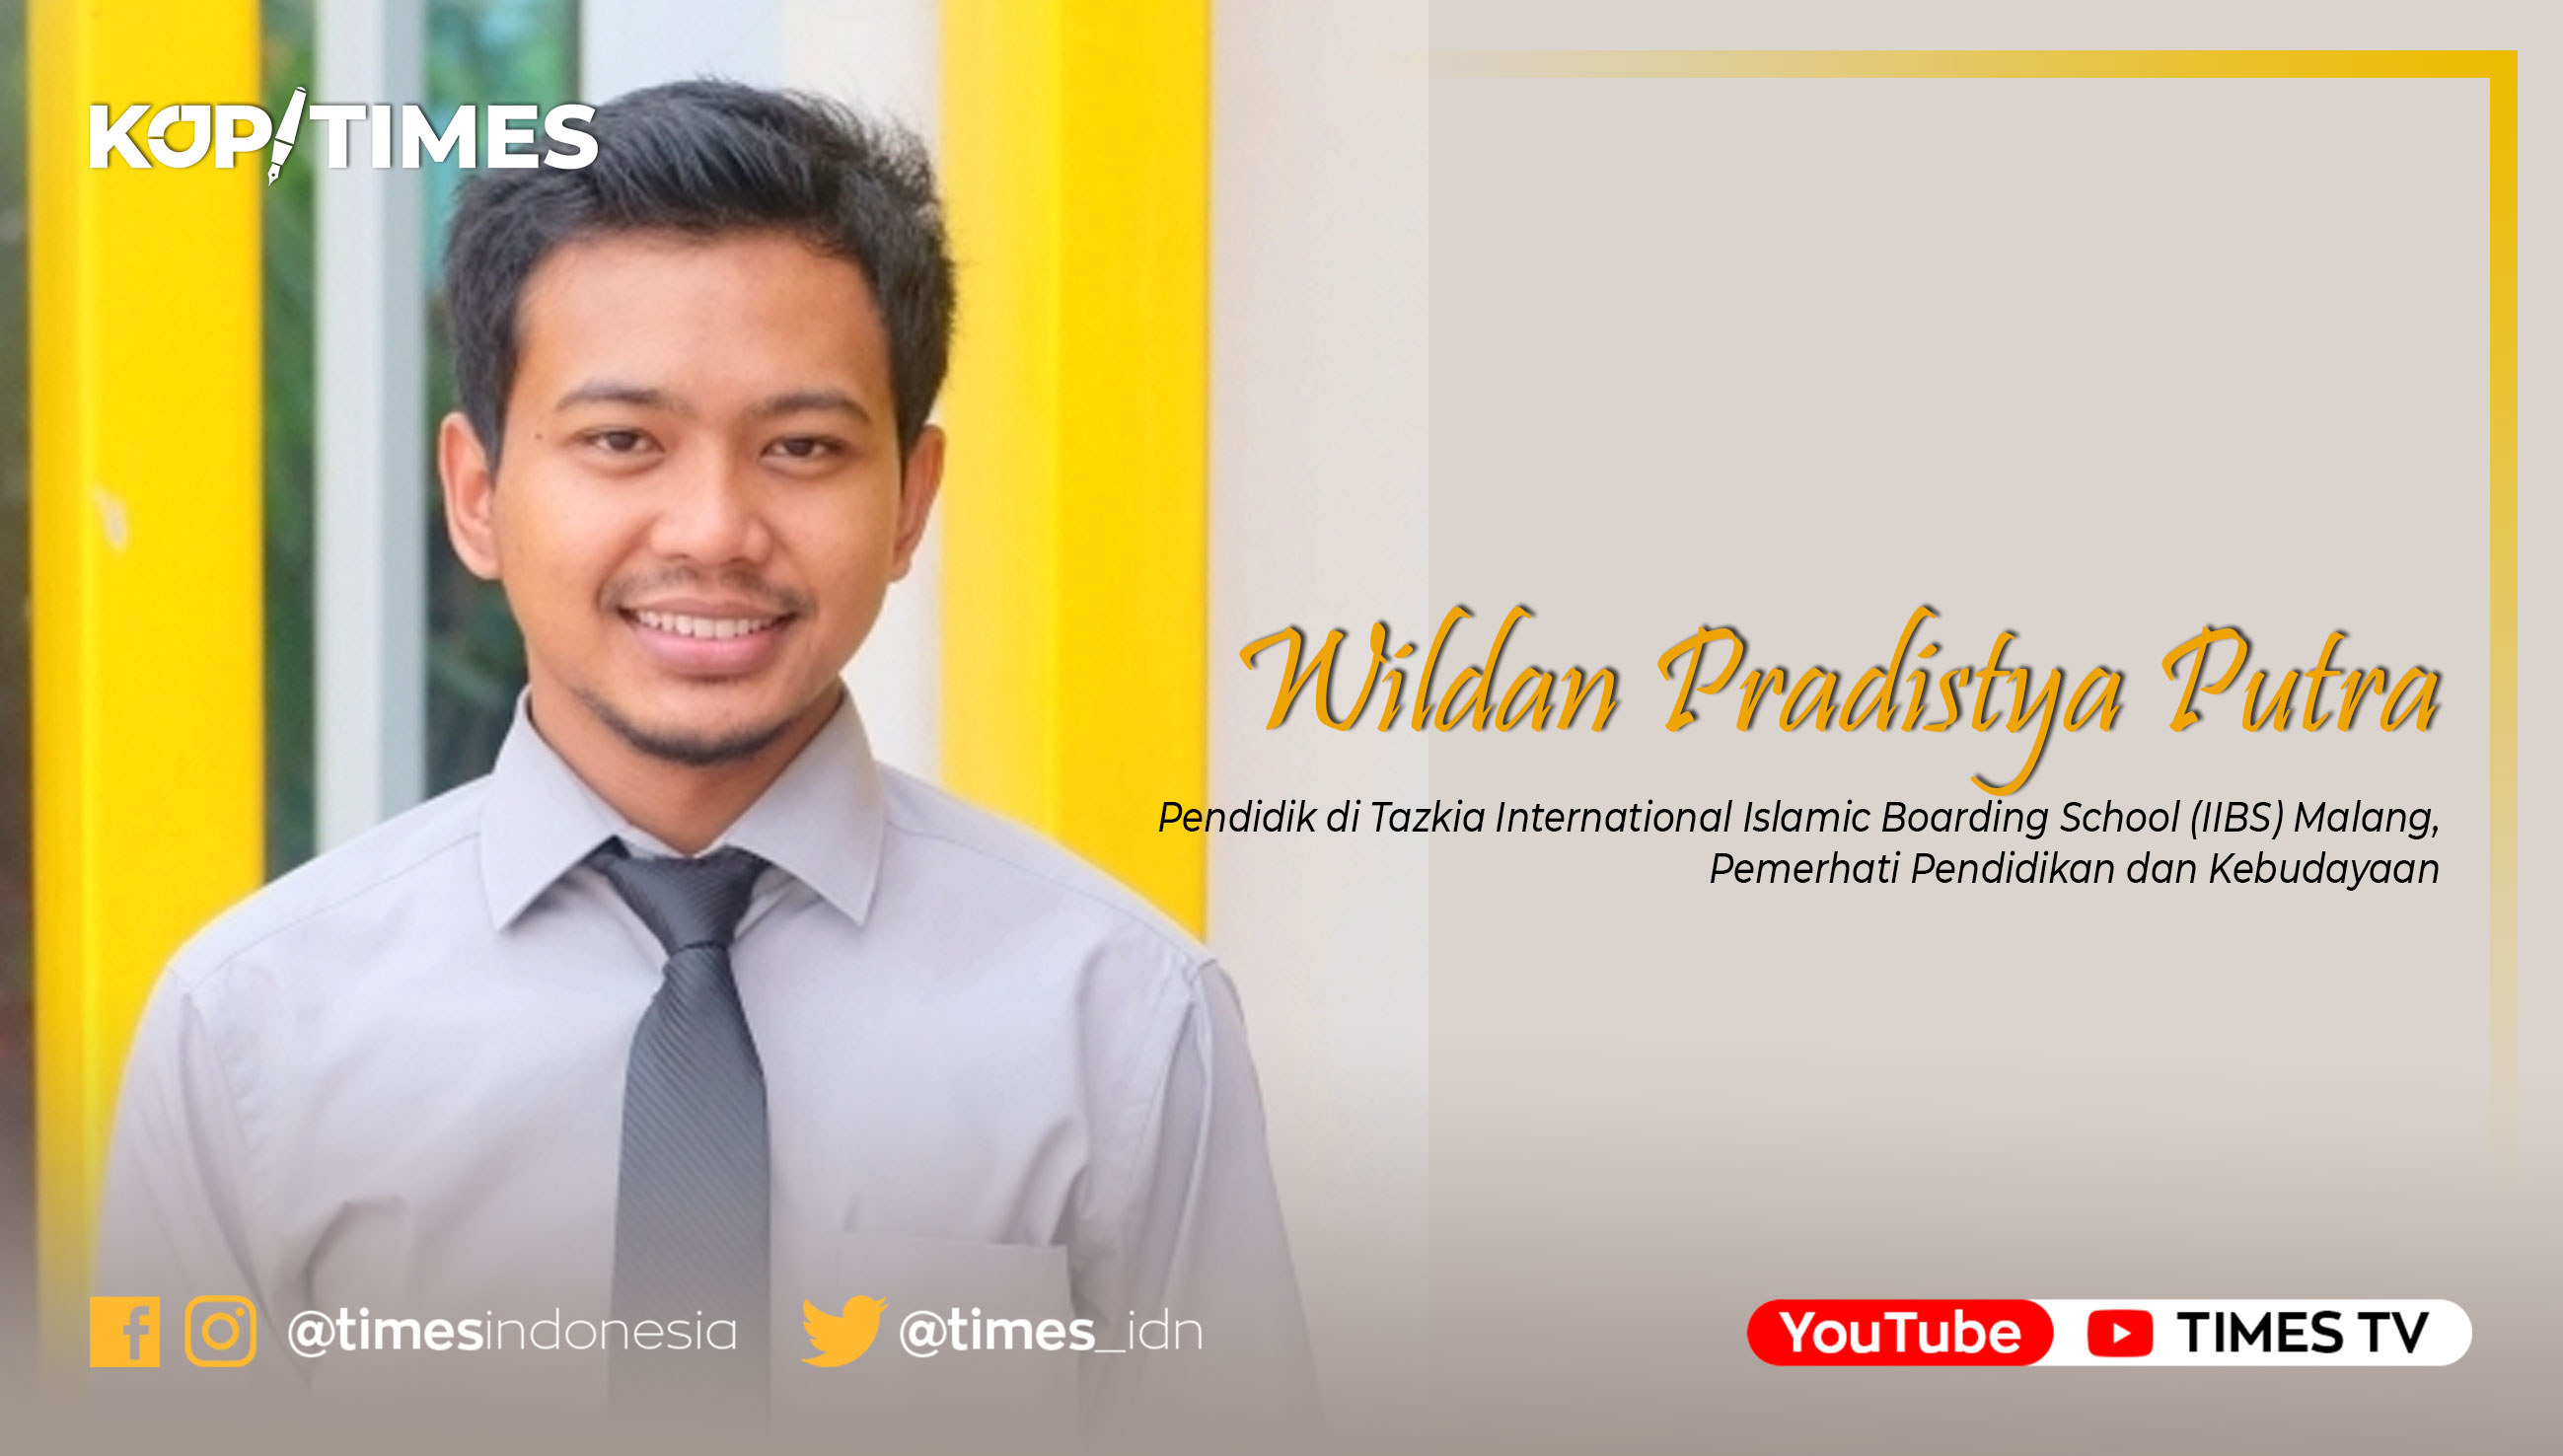 Wildan Pradistya Putra, Pendidikan di Thursina International Islamic Boarding School (IIBS) Malang.